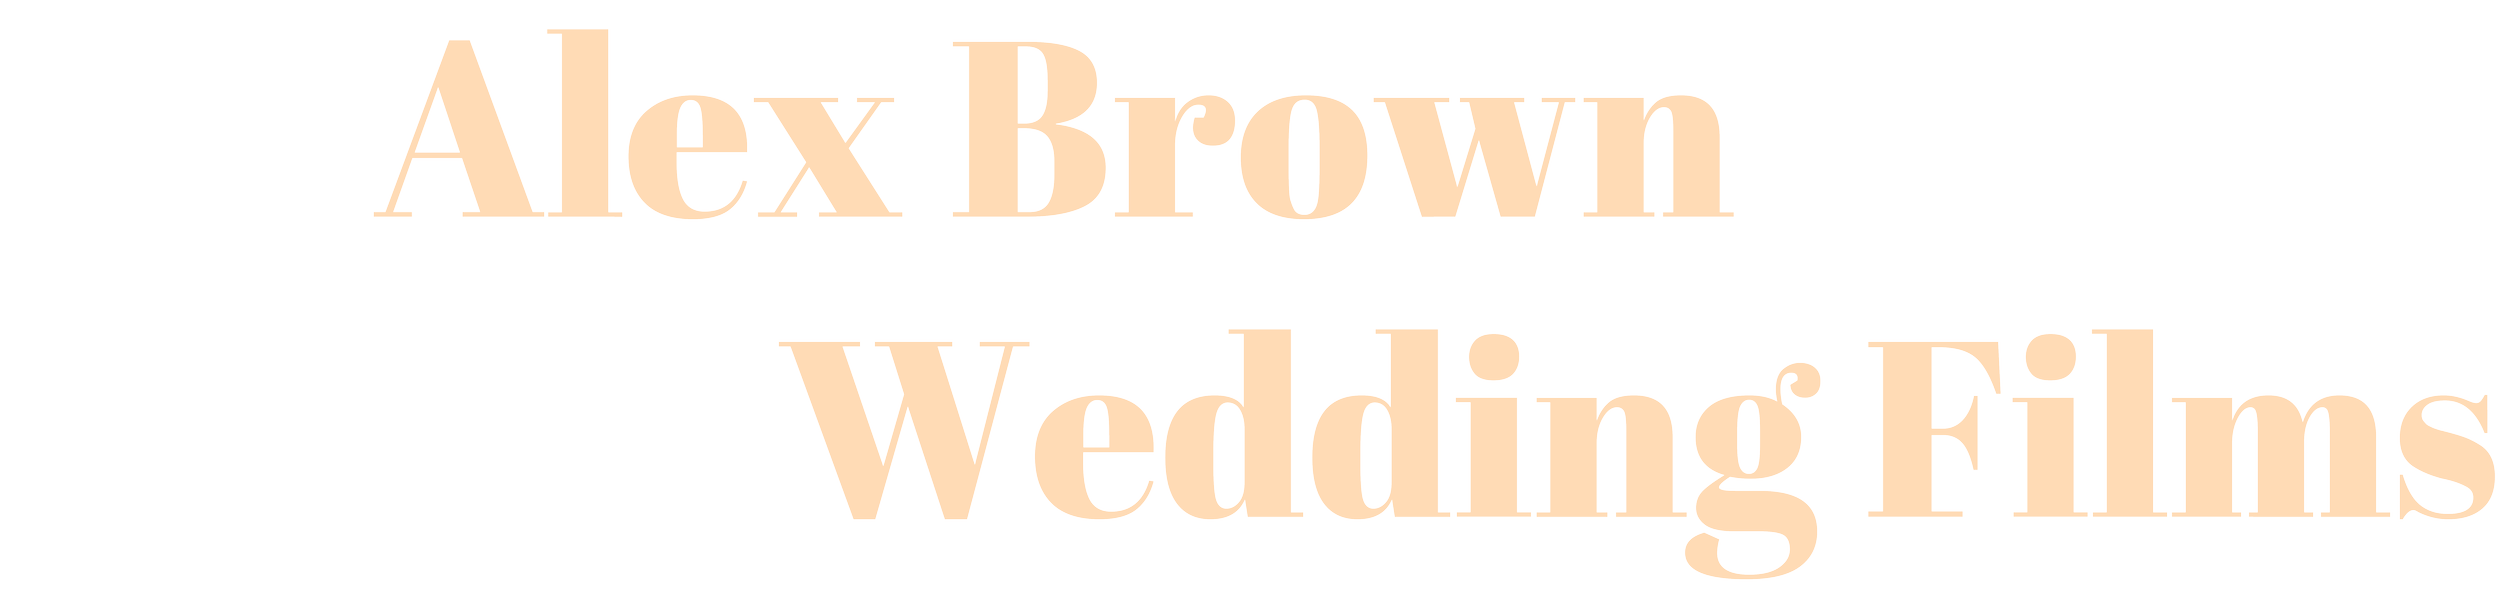 Alex Brown Wedding Films